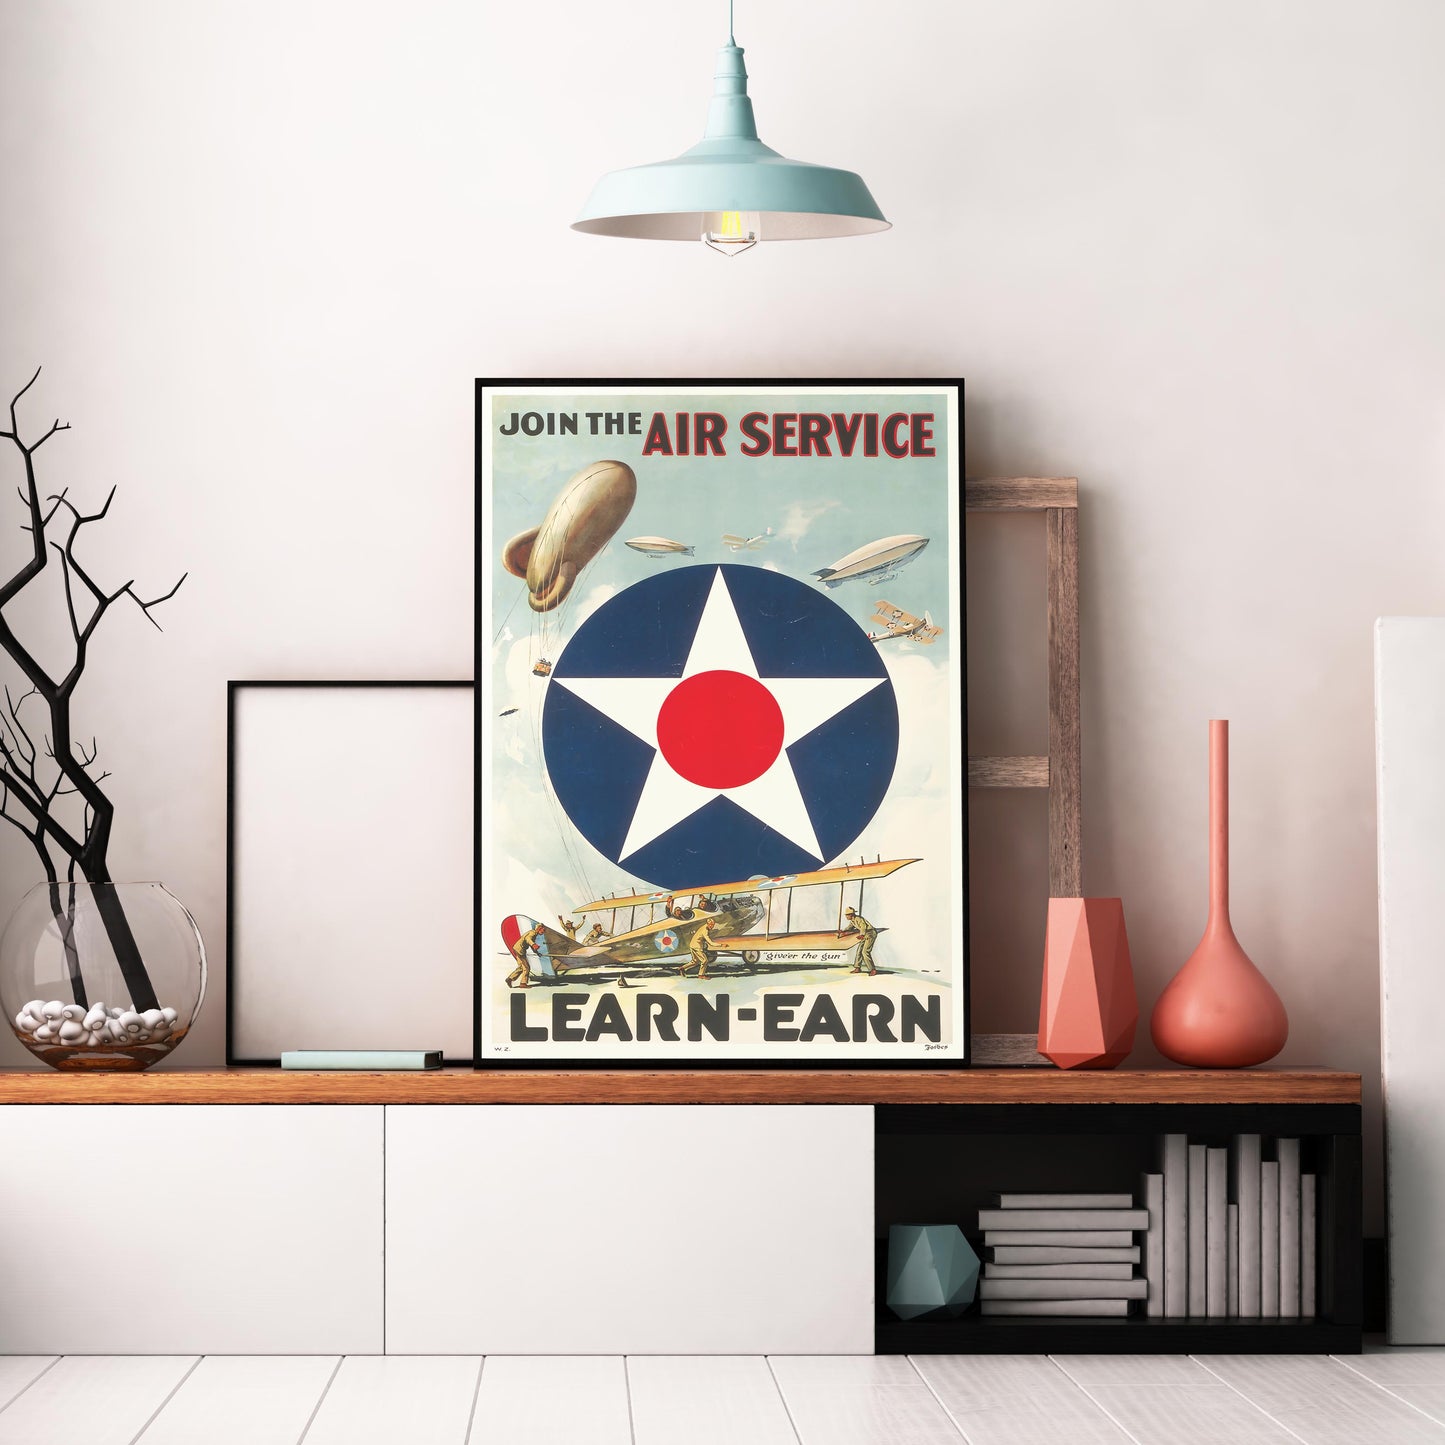 Join the Air Service, Learn-Earn / Amerikansk rekrutterings plakat